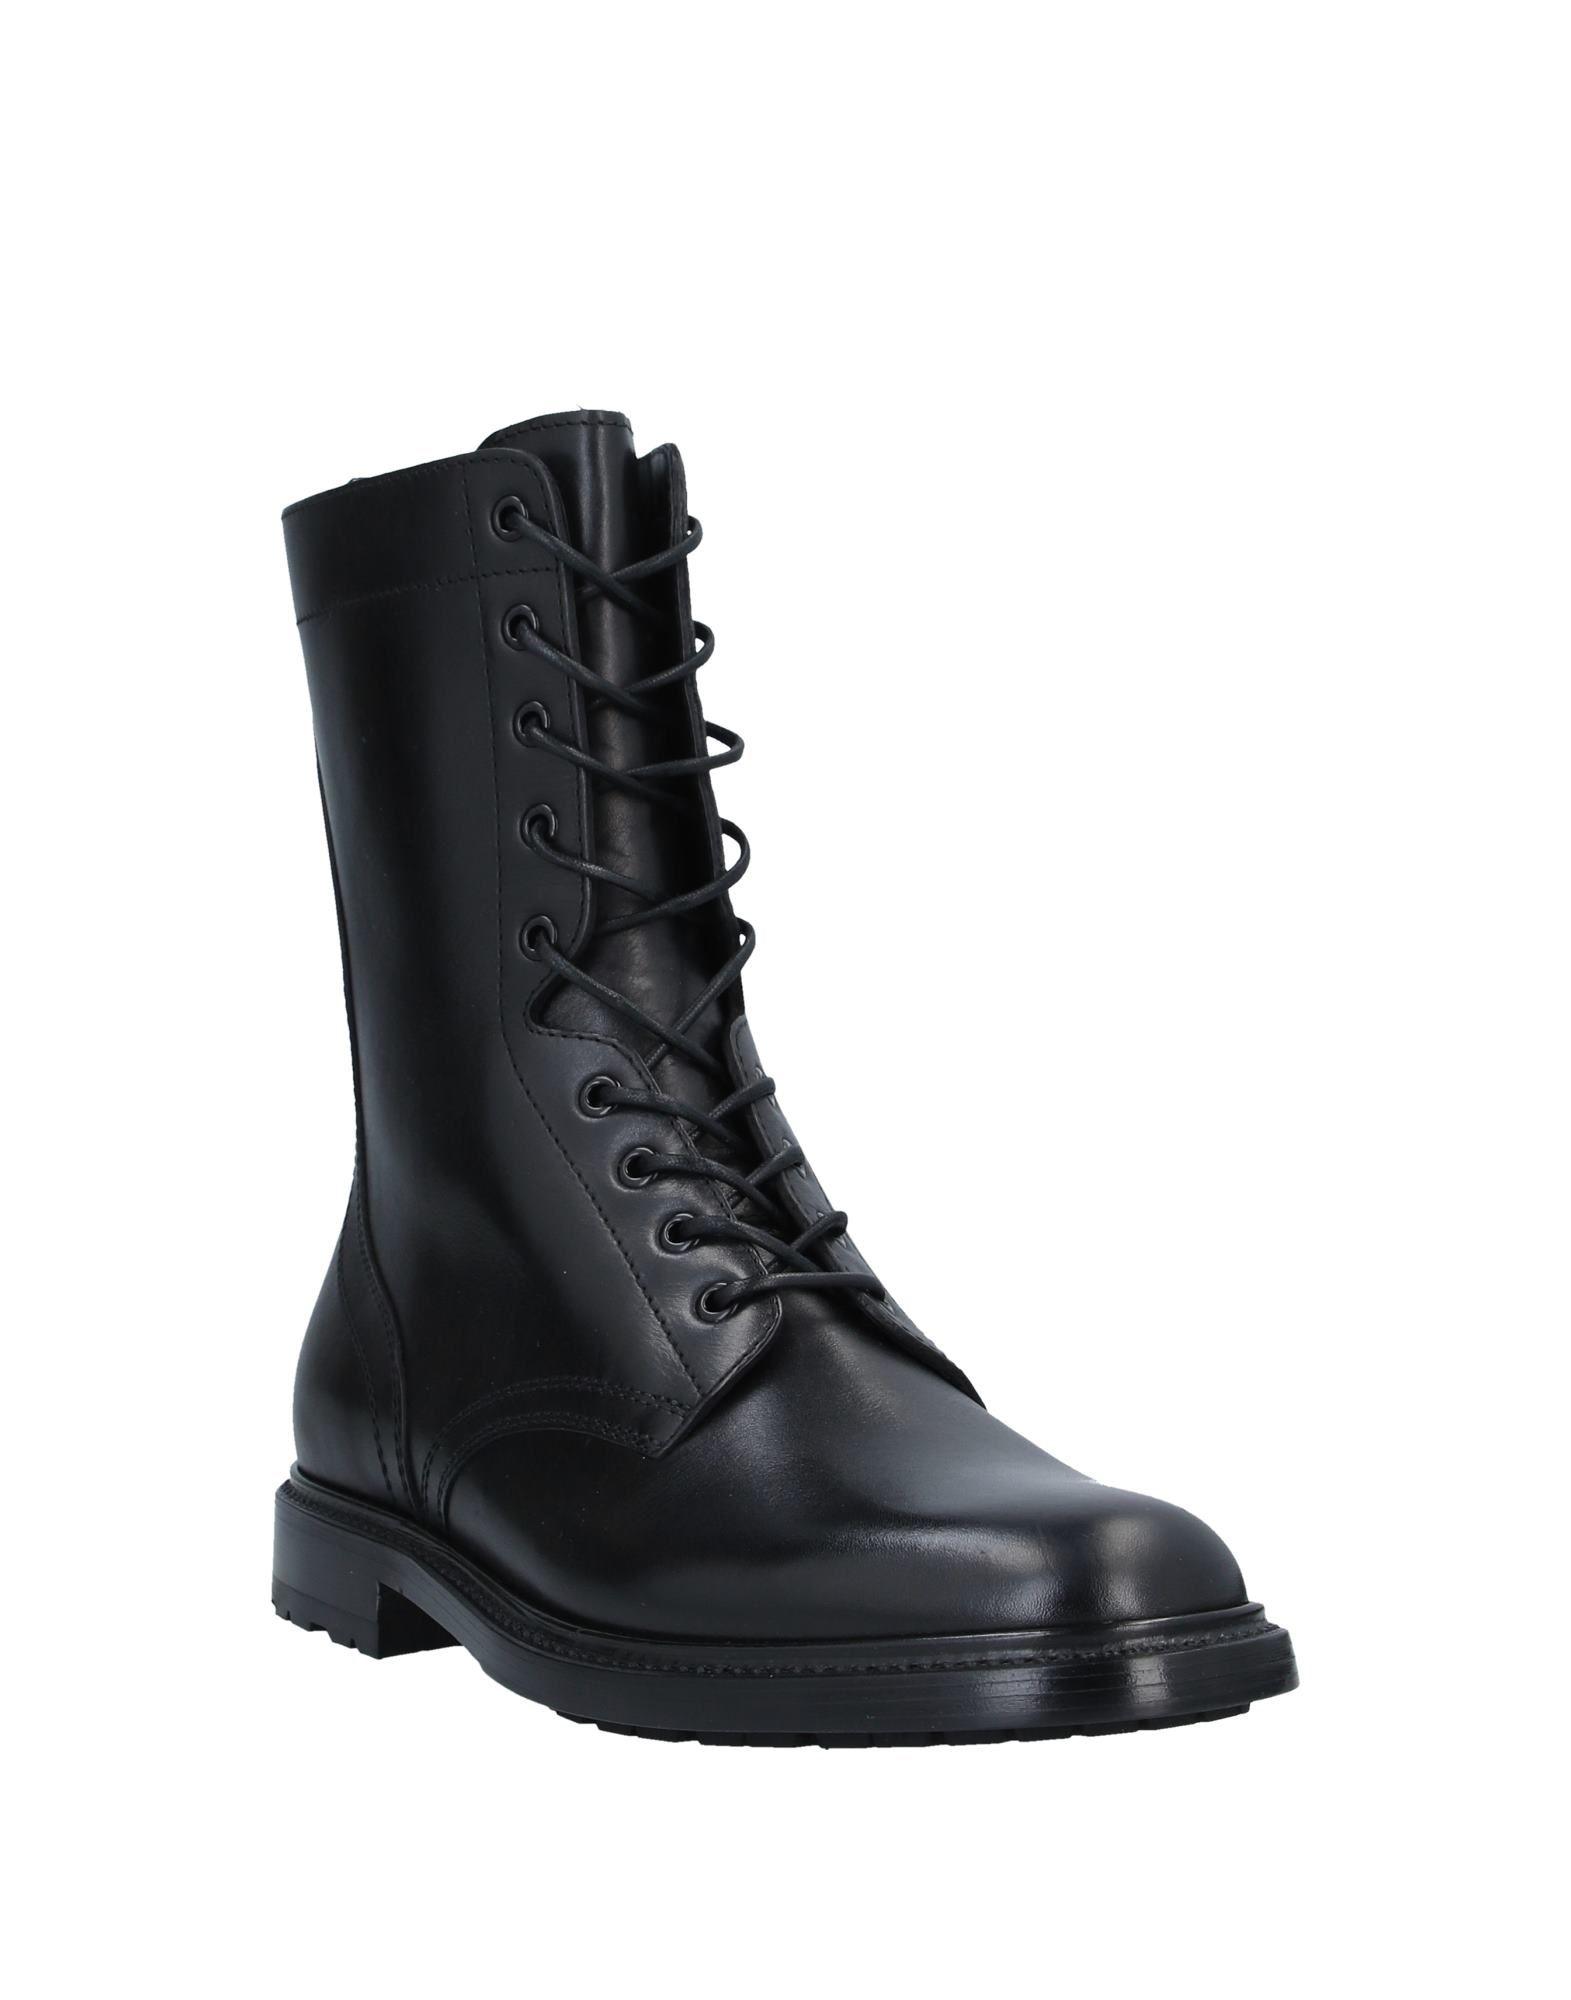 Celine Boots in Black for Men - Lyst